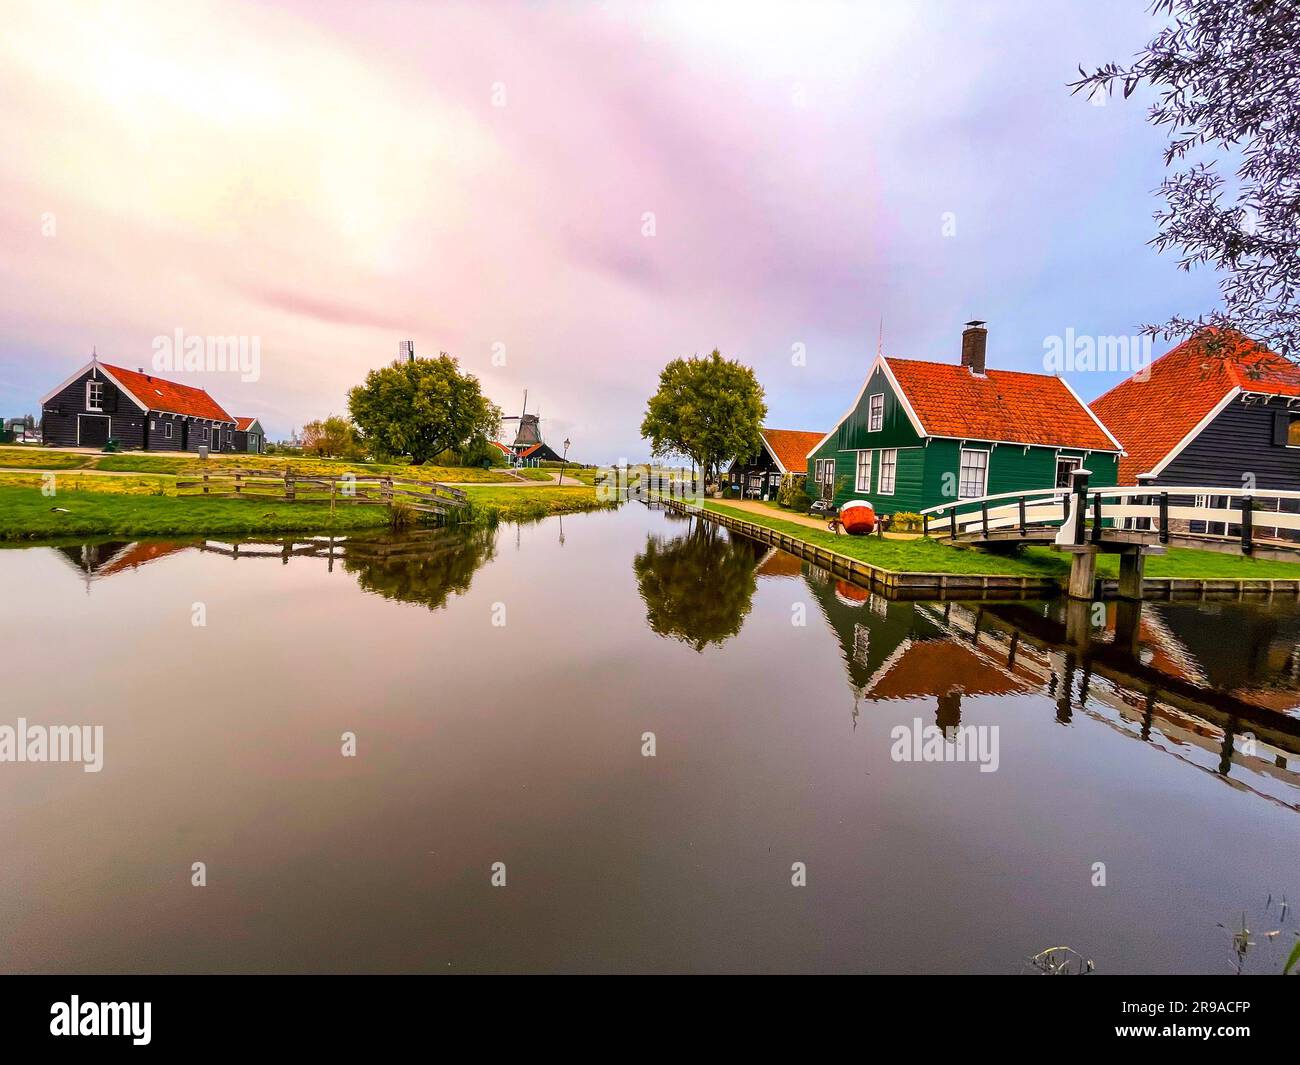 Zaanse Schans is a neighbourhood of Zaandam, near Zaandijk, Netherlands, famous for its collection of well-preserved historic windmills and houses. Stock Photo